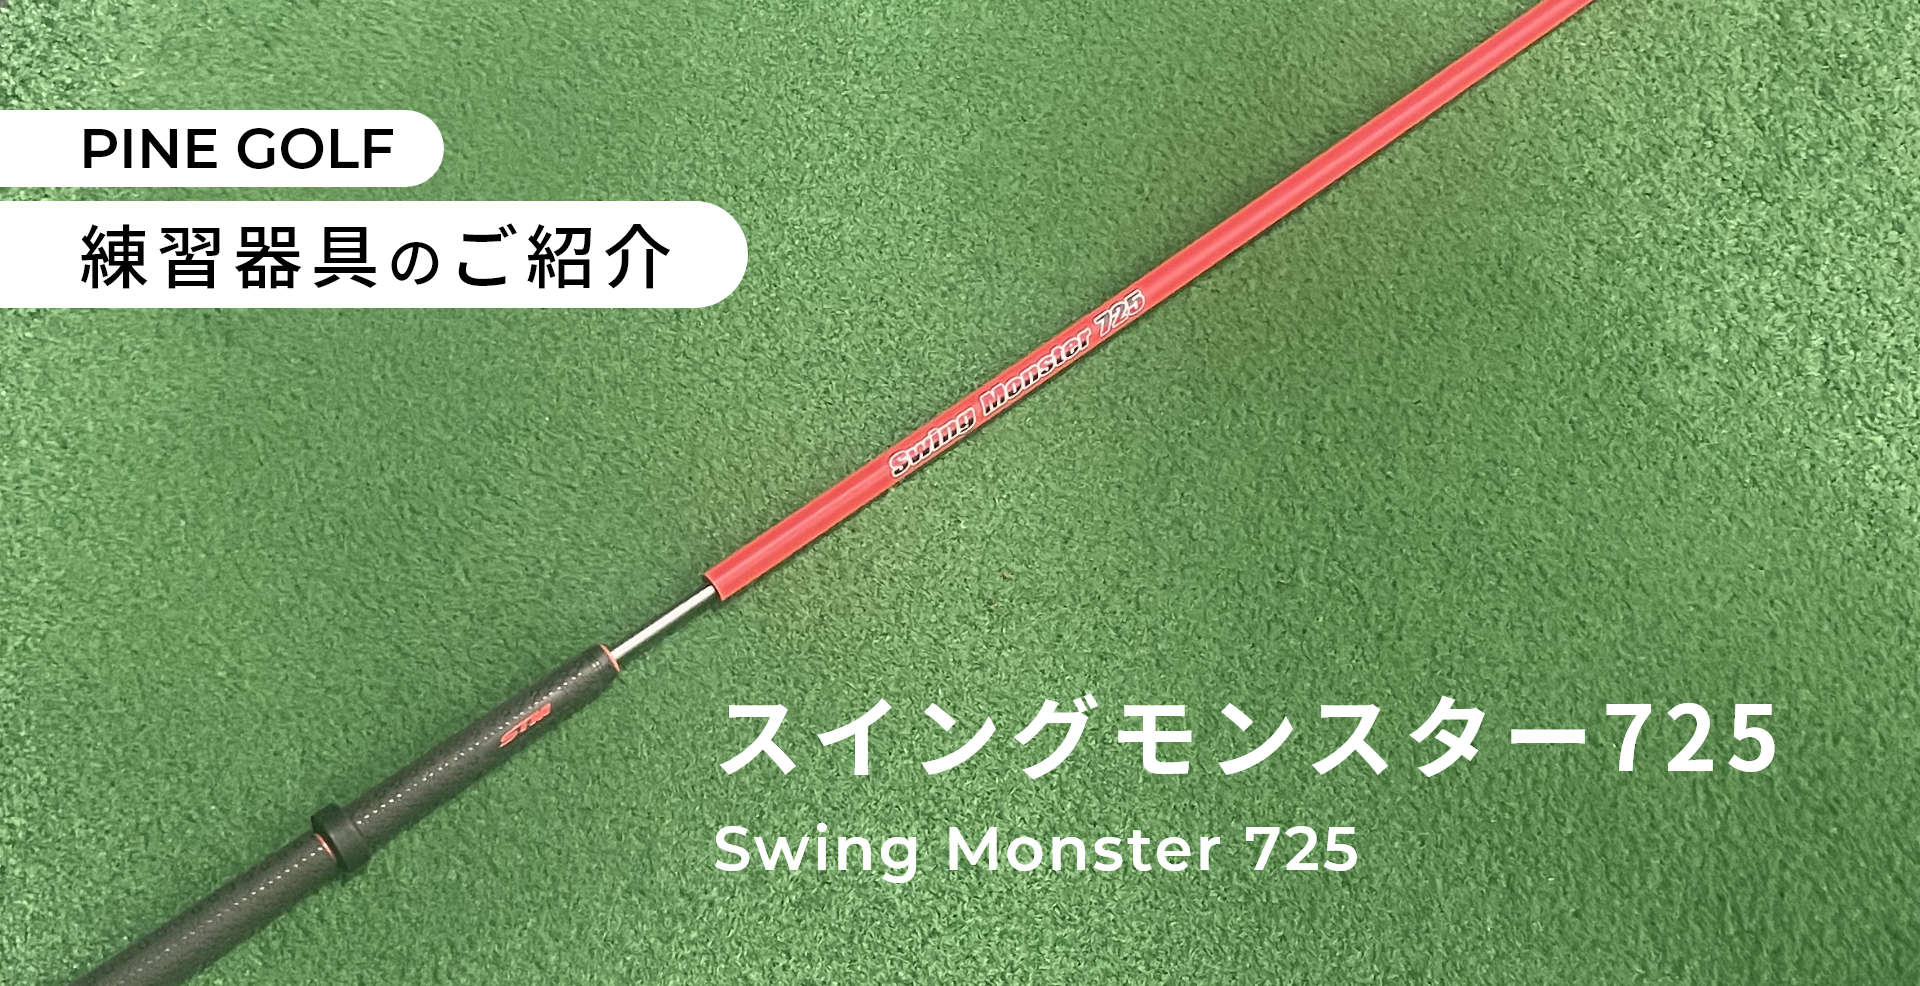 ゴルフ練習器具『スイングモンスター725』のご紹介 | PINE GOLF大橋 